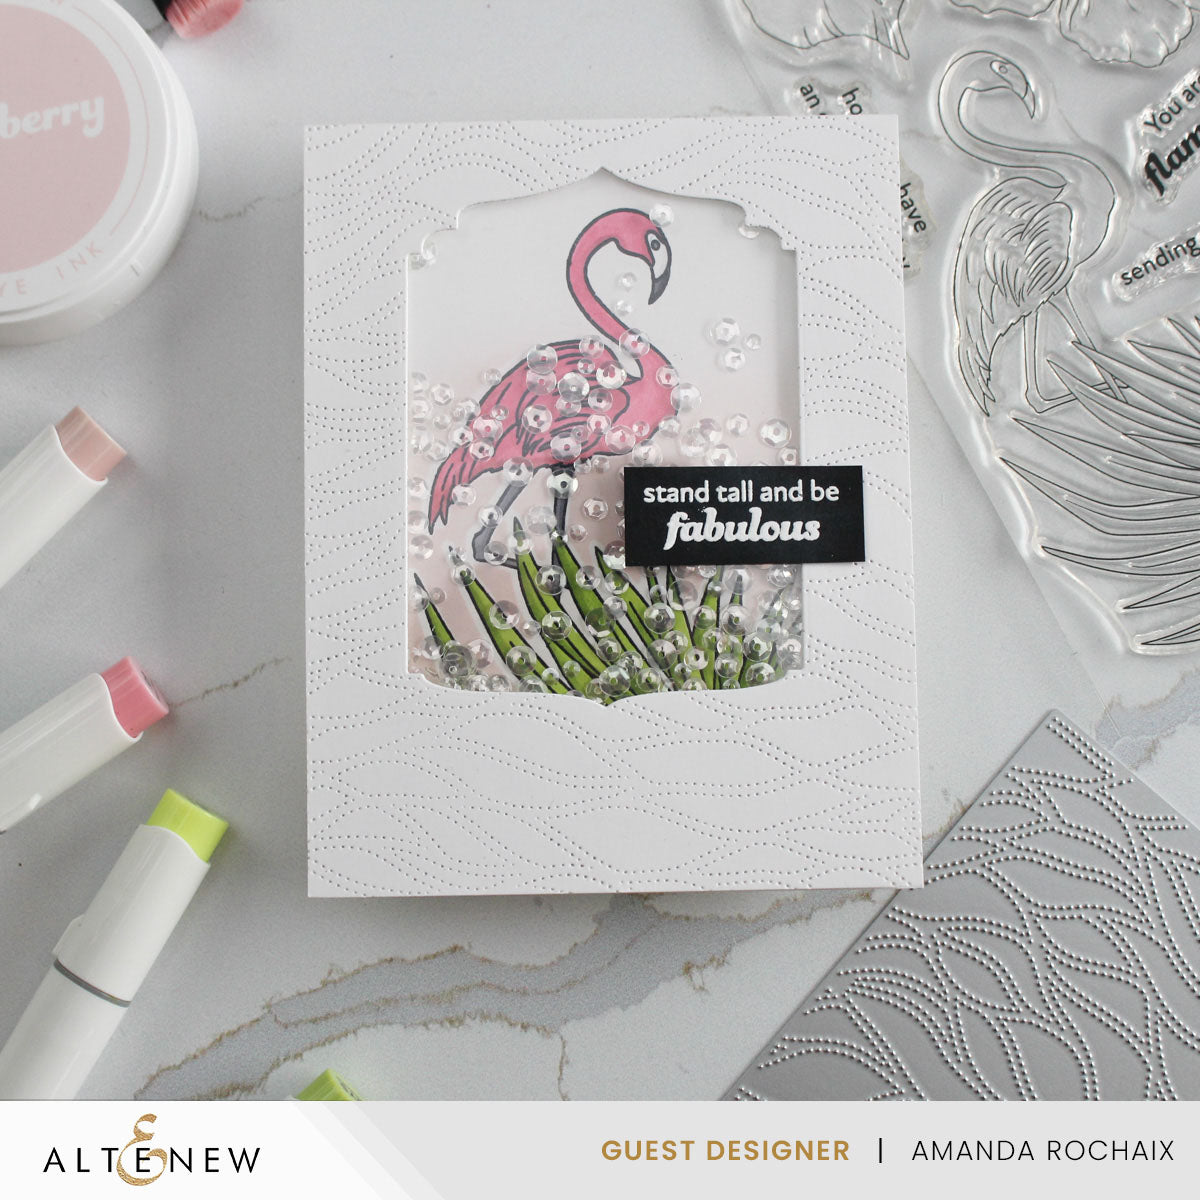 Stamp & Die Bundle Flowers And A Flamingo